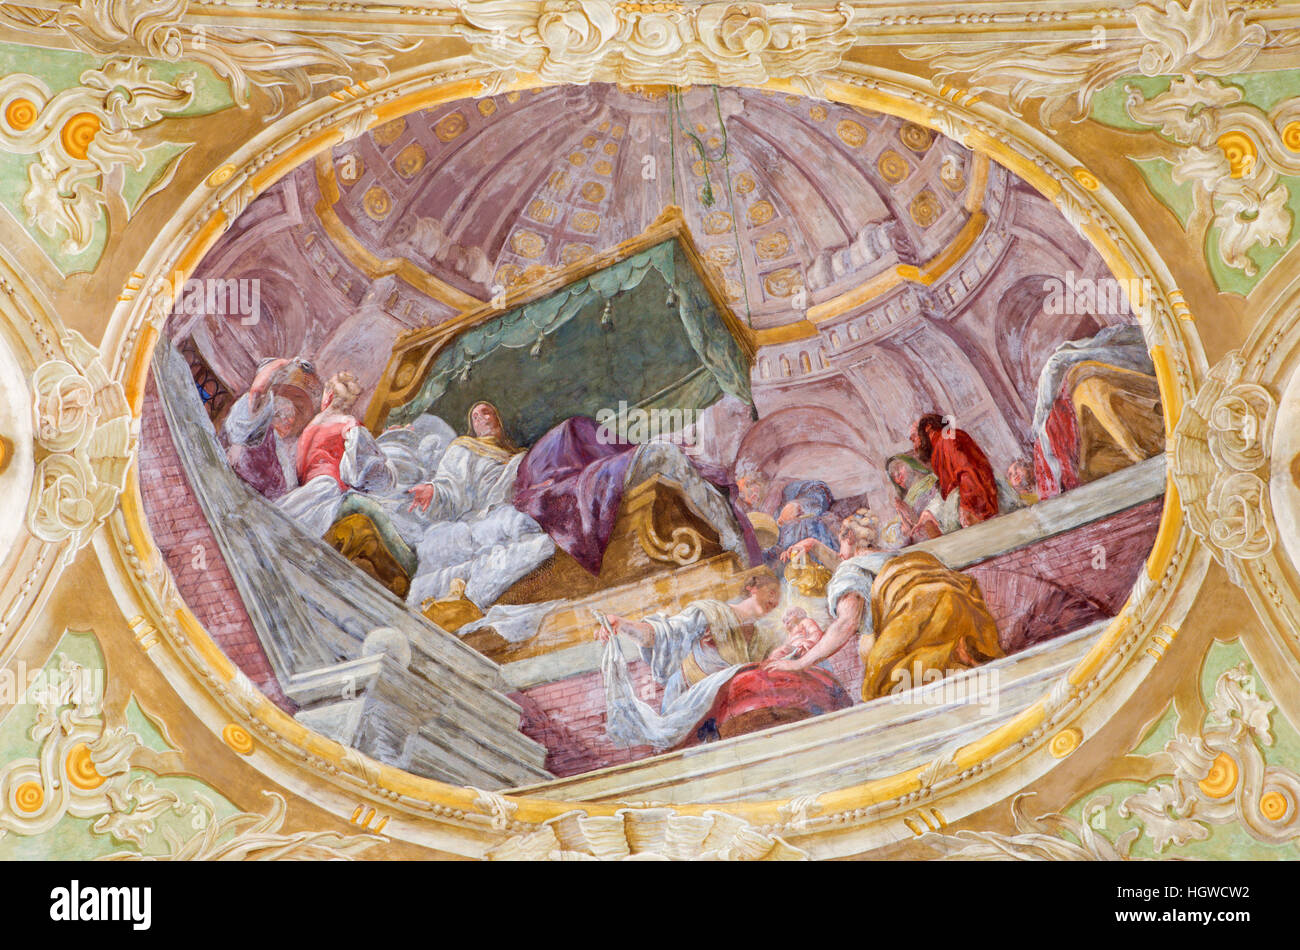 Vienne, Autriche - 19 décembre 2016 : la fresque au plafond de la naissance de la Vierge Marie à l'église Mariahilfer Kirche Banque D'Images